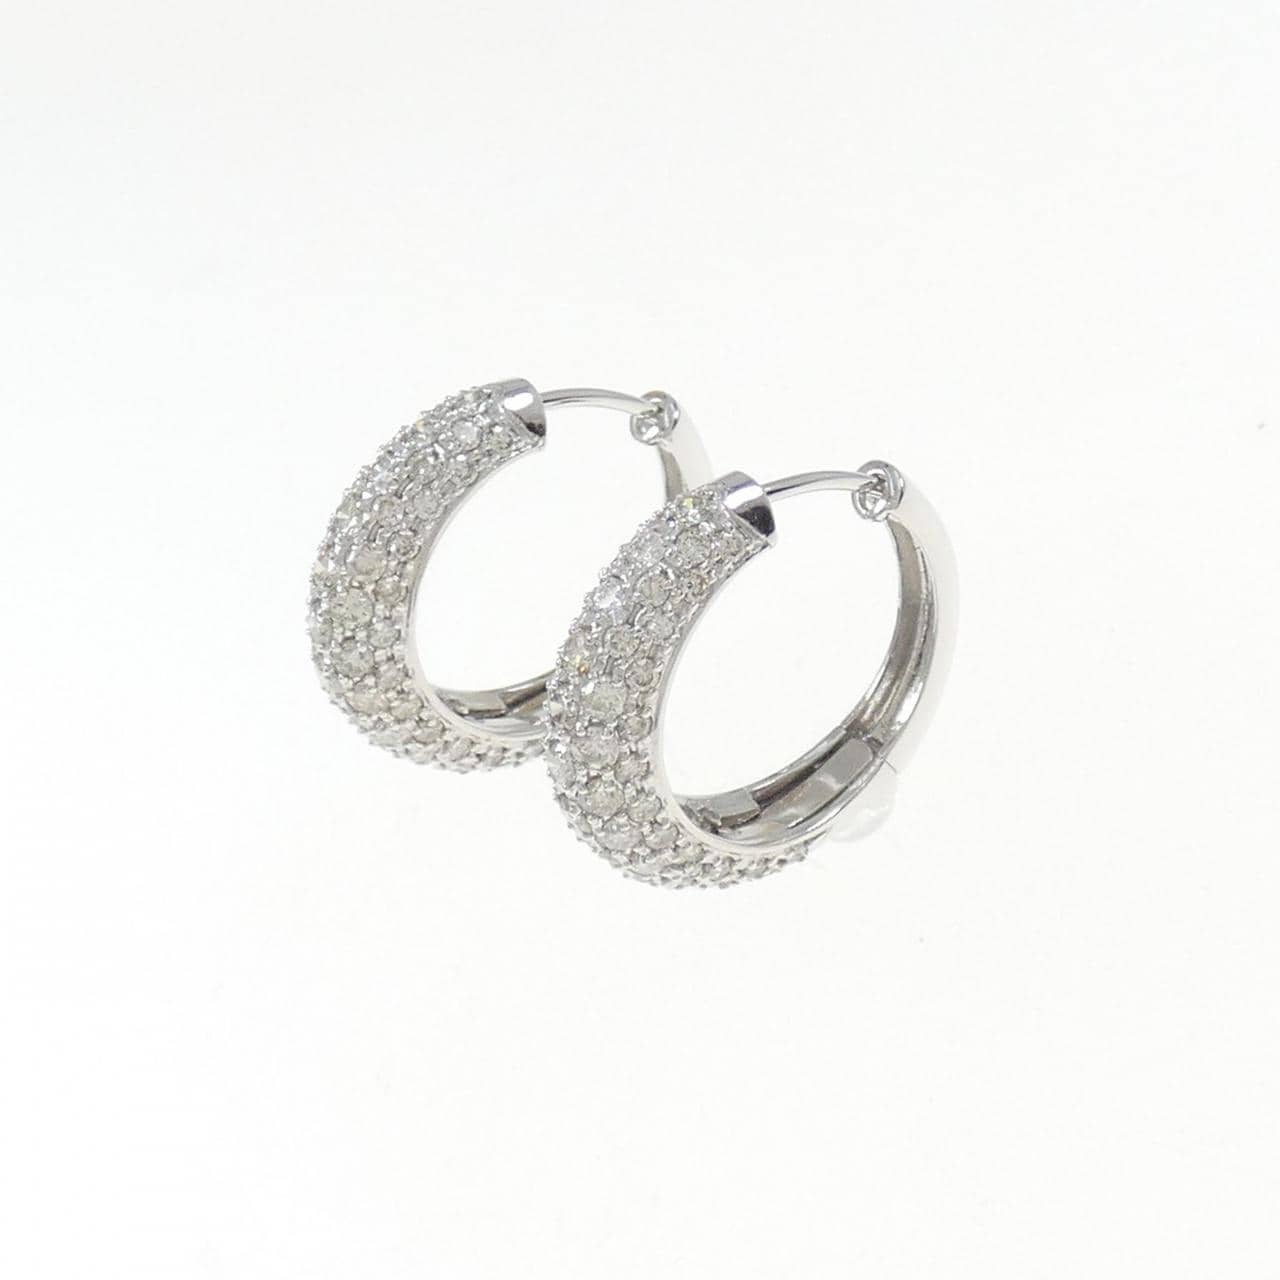 K18WG pave Diamond earrings 2.12CT